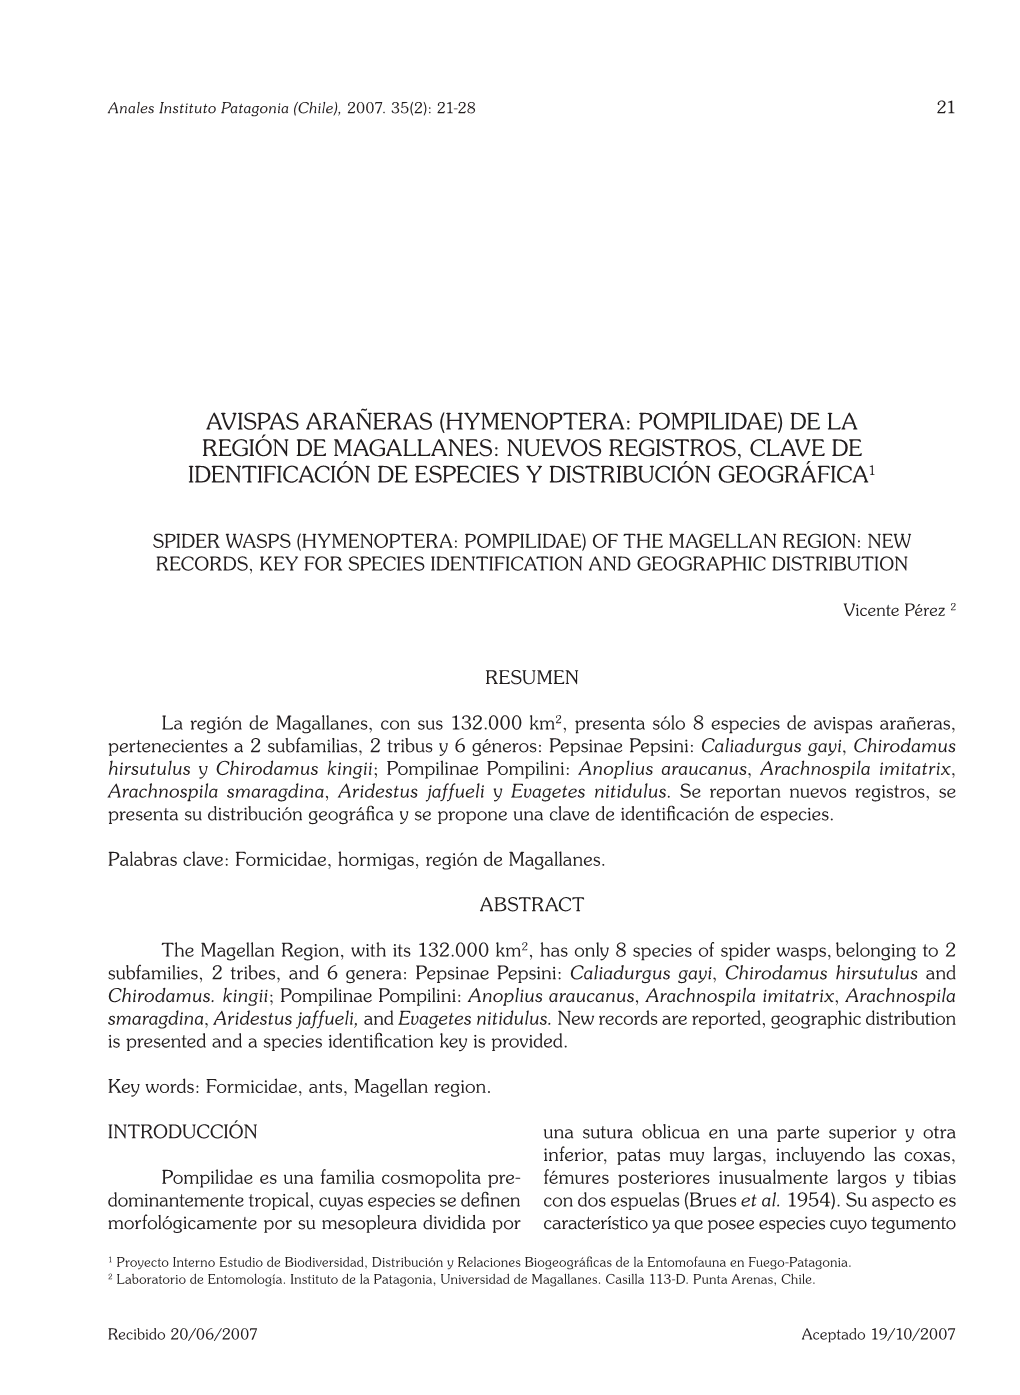 Avispas Arañeras (Hymenoptera: Pompilidae) De La Región De Magallanes: Nuevos Registros, Clave De Identificación De Especies Y Distribución Geográfica1